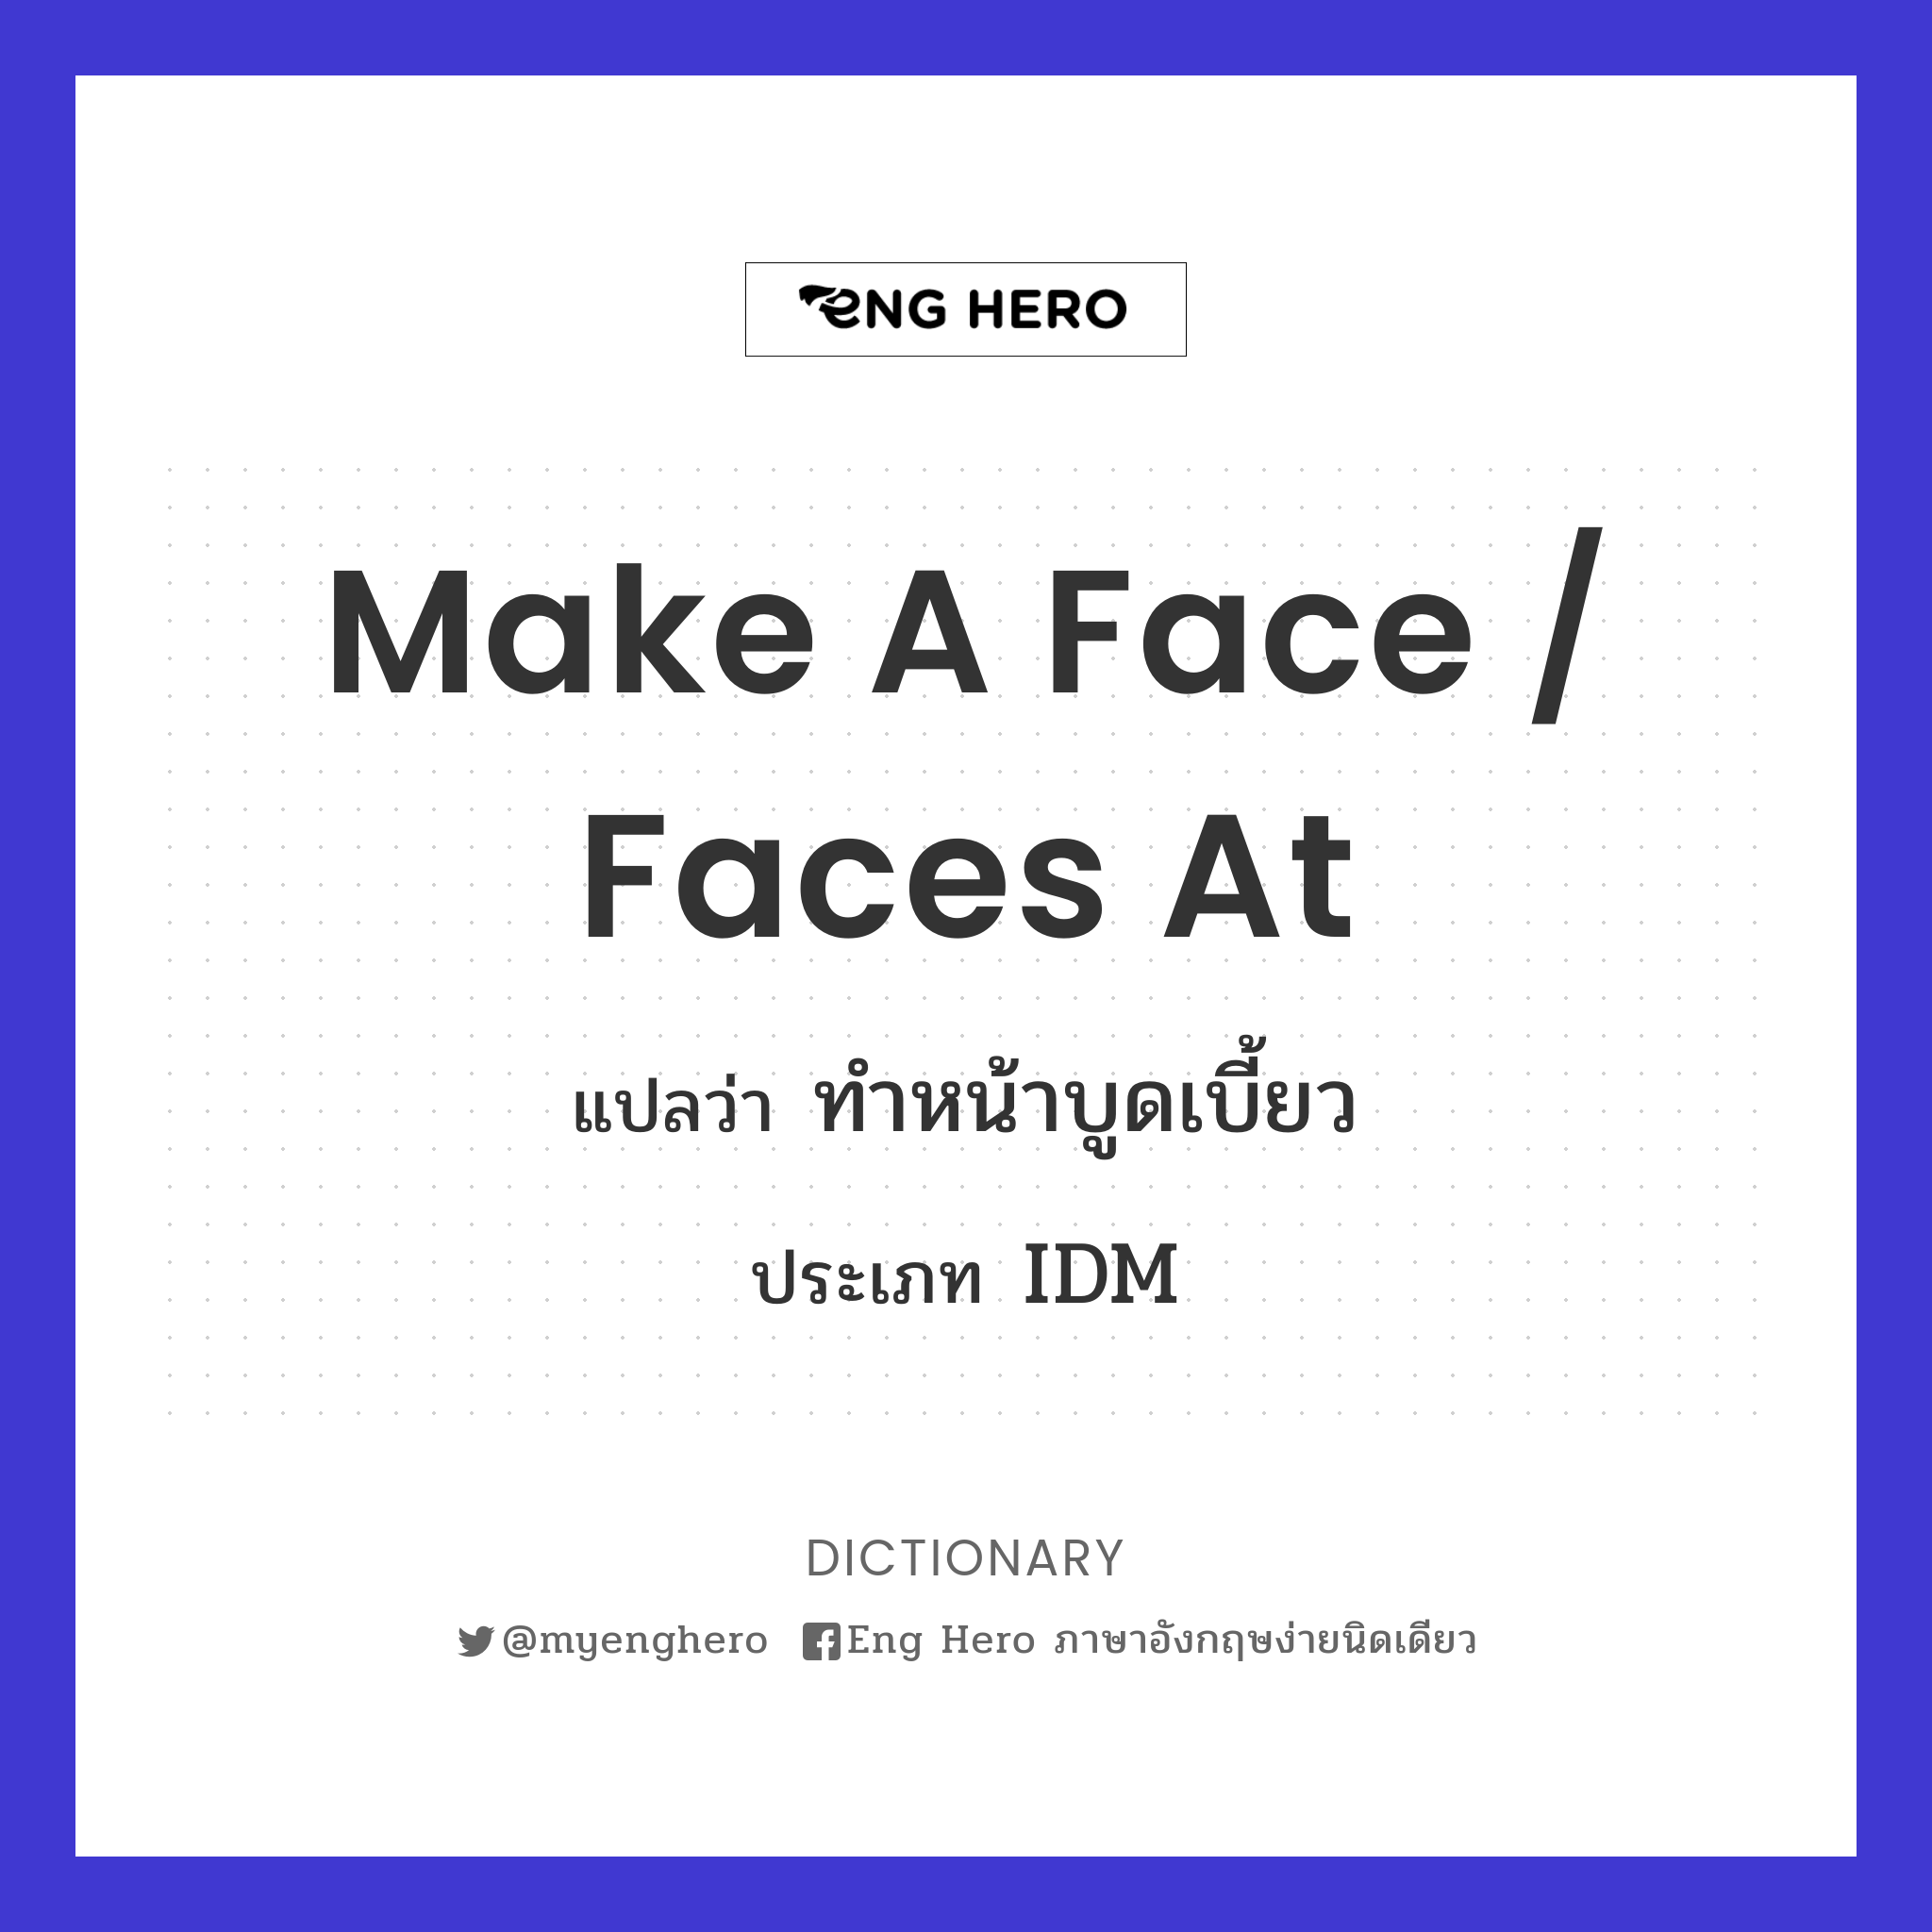 make a face / faces at